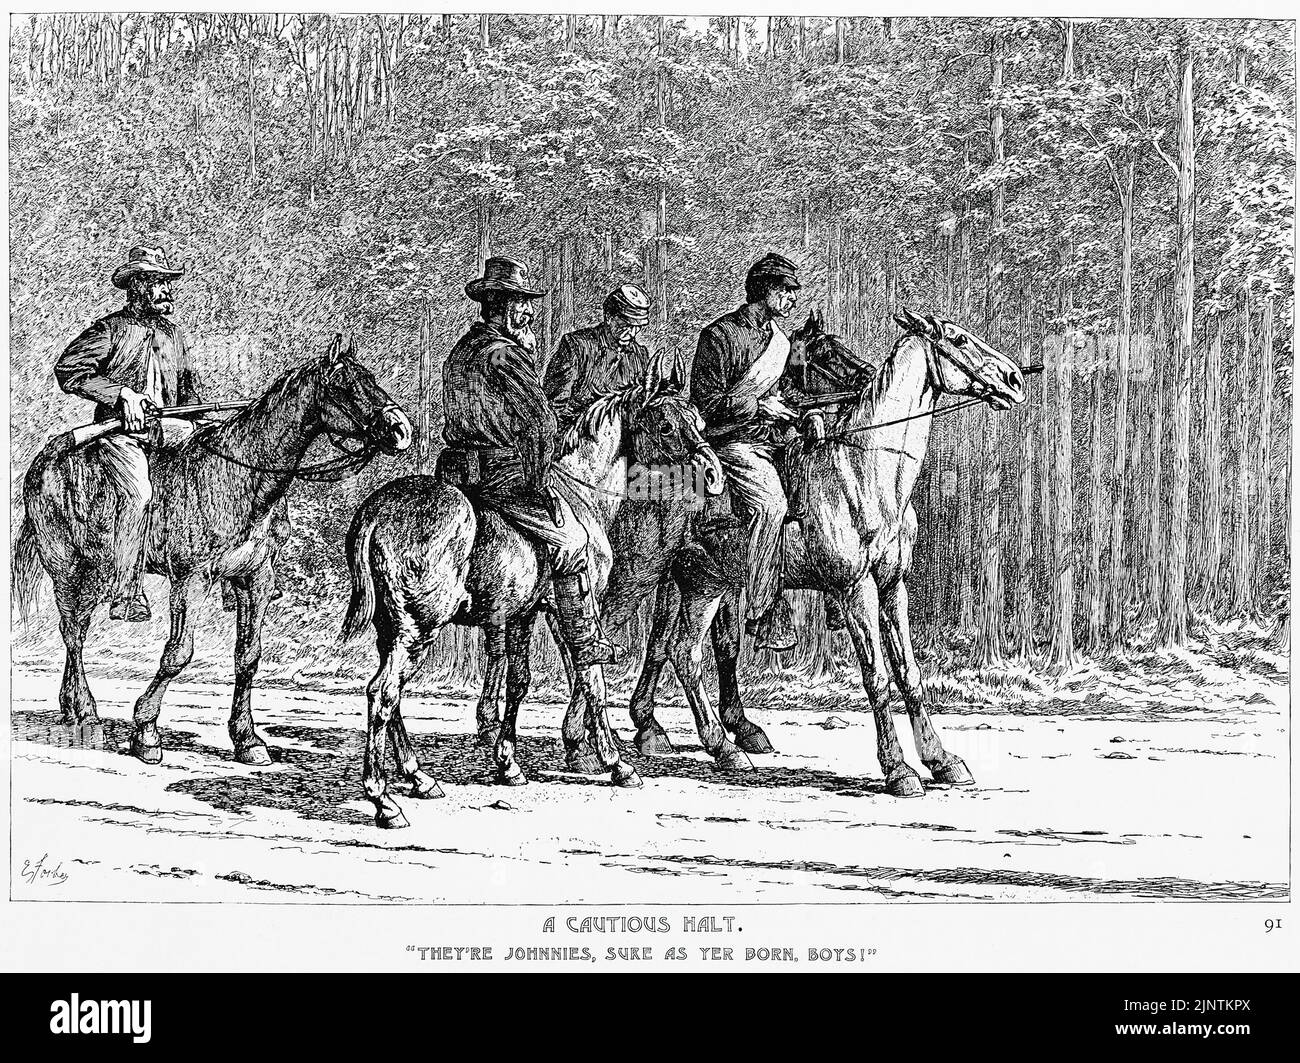 Un arresto cauto - 'sono Johnnies, sicuro come Yer sopportato, ragazzi!' Illustrazione della guerra civile americana del 19th secolo di Edwin Forbes Foto Stock